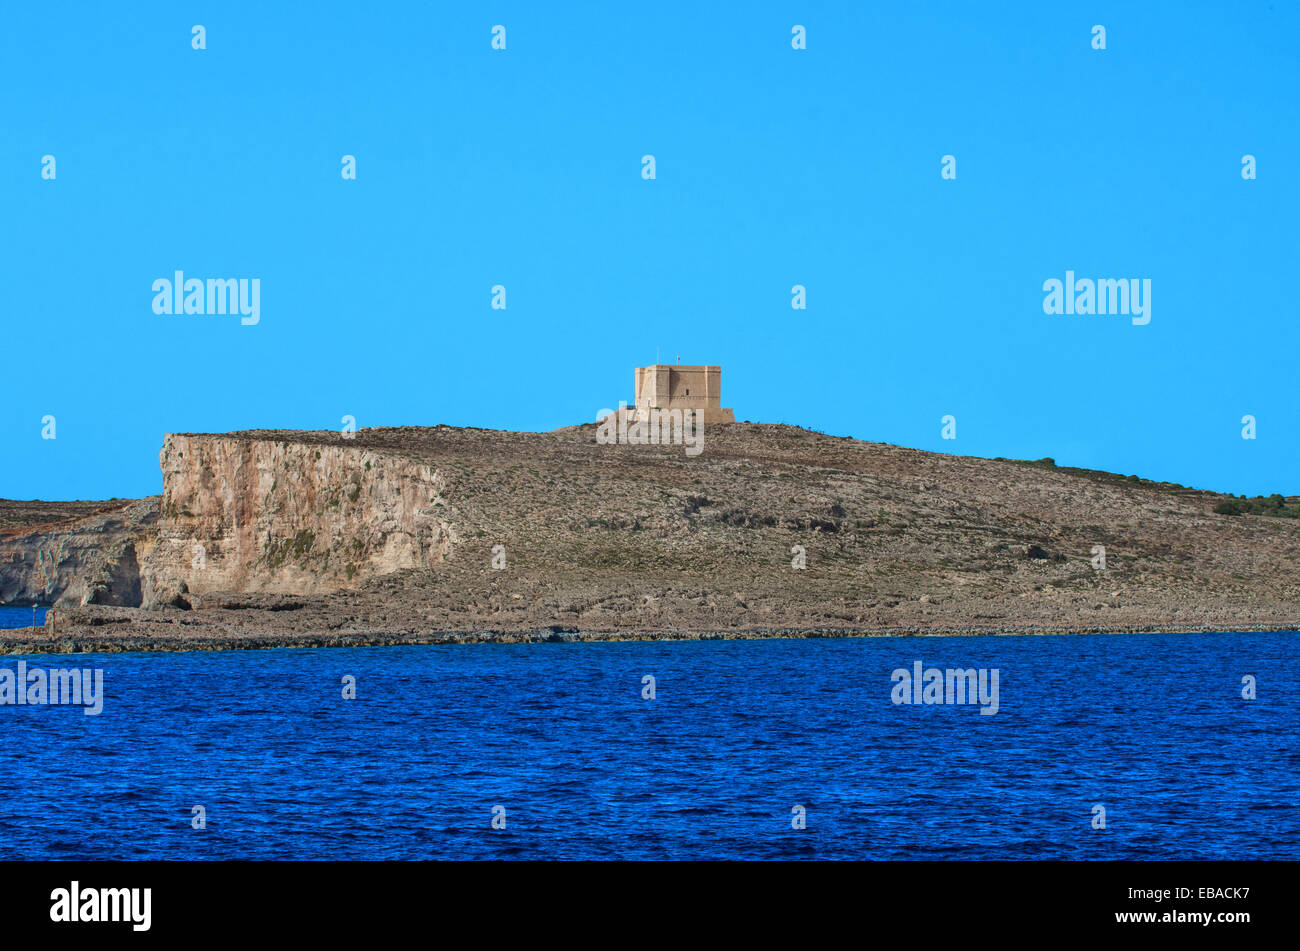 Malta, isola di Comino: La torre di Santa Maria, l'edificio più imponente della più piccola isola dell'Arcipelago Maltese. Foto Stock